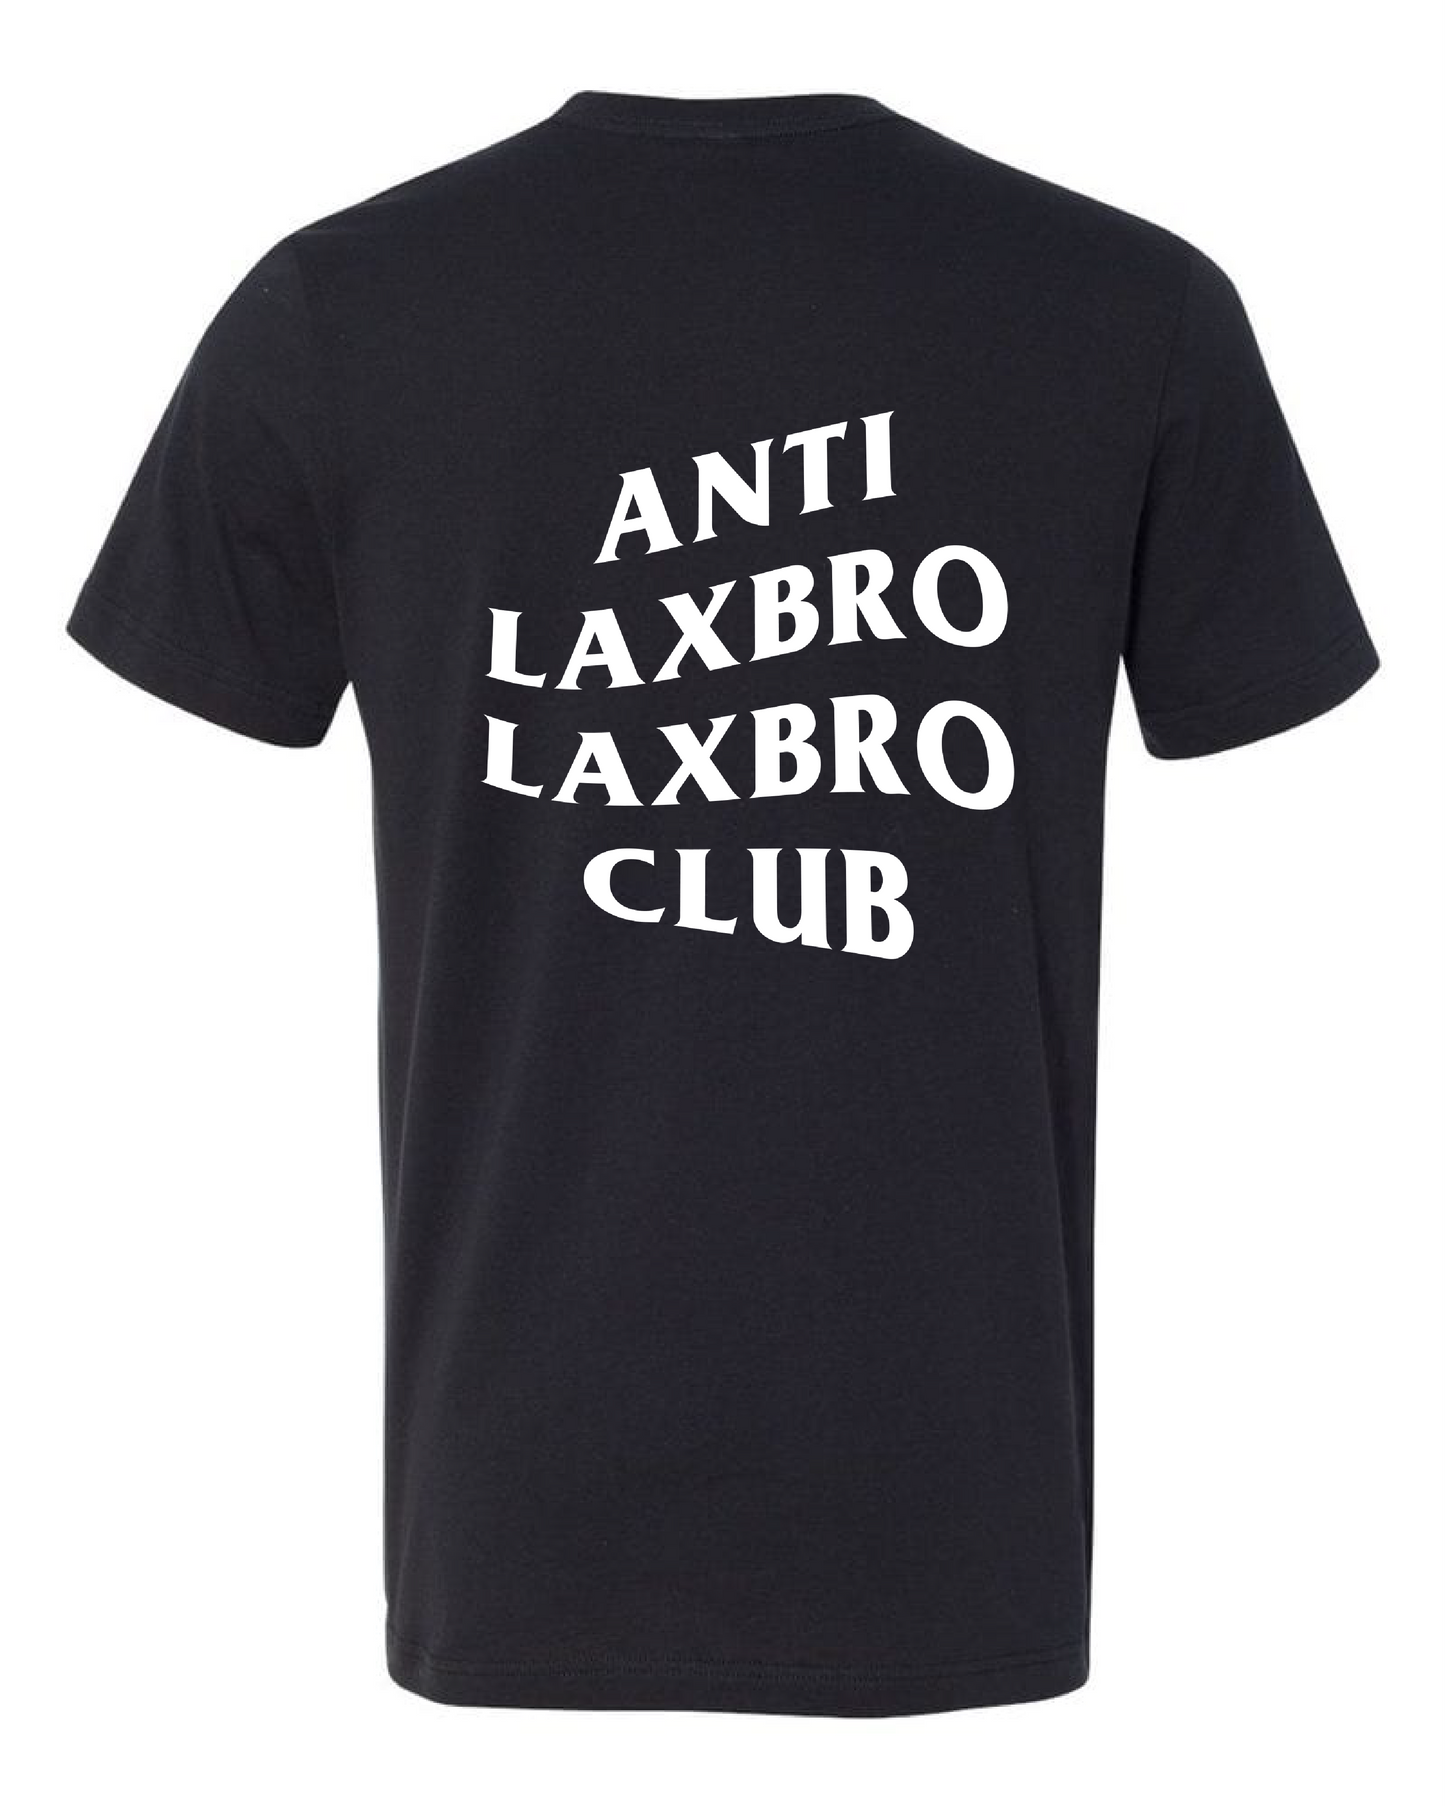 Anti Laxbro Laxbro Club Tee